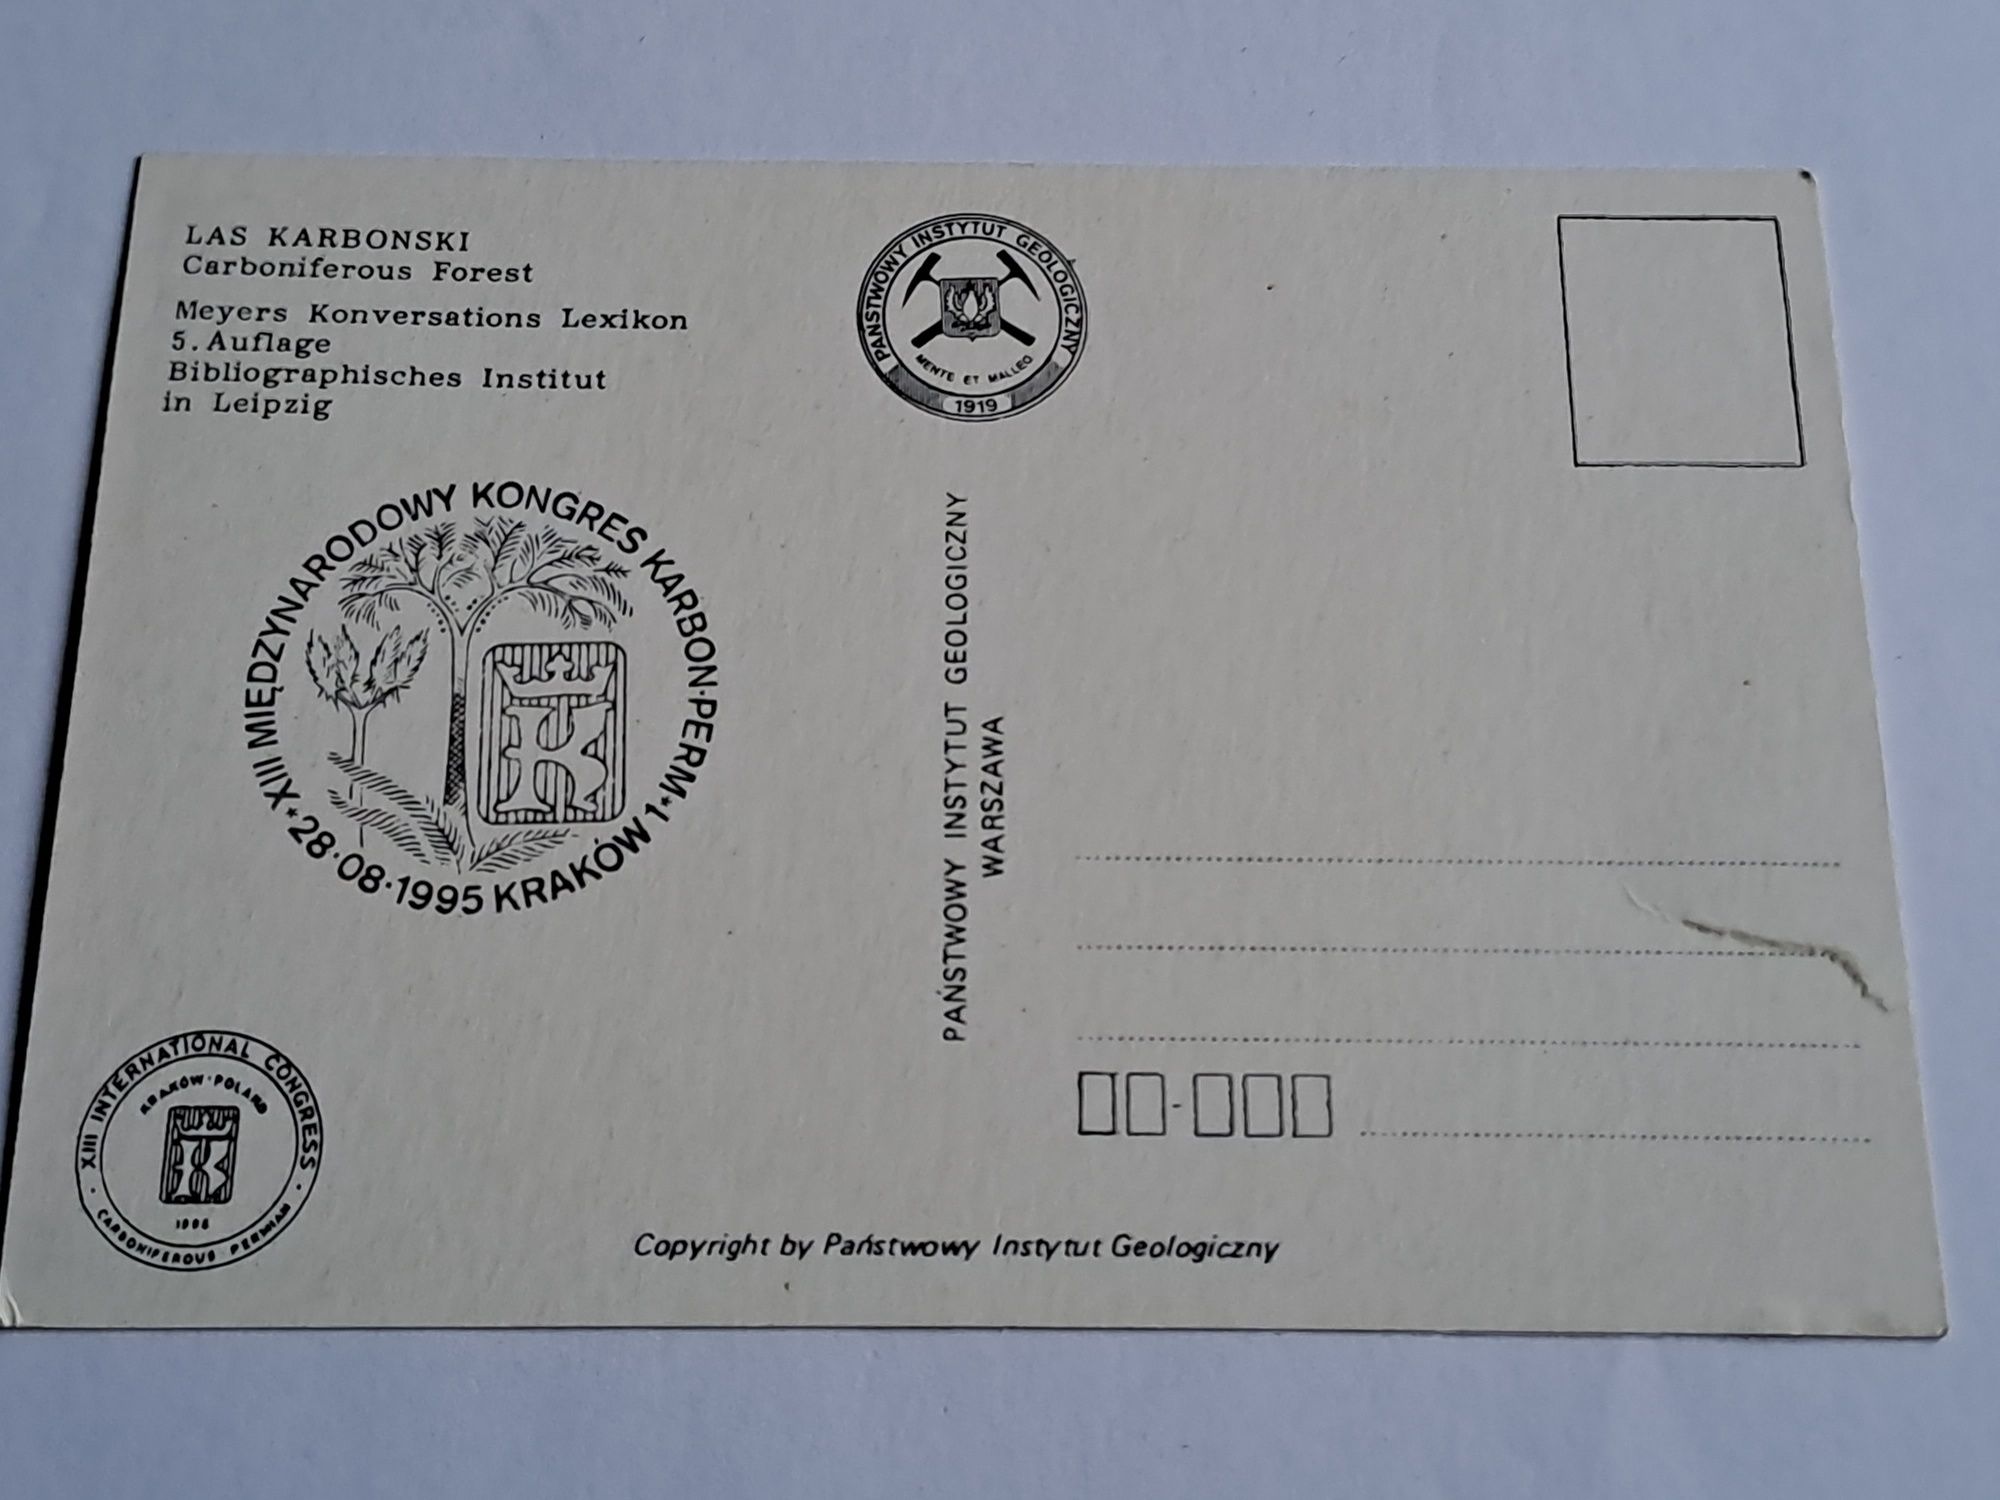 Okolicznościowa pocztowka/grafika z Kongresu Karbonskiego 1995